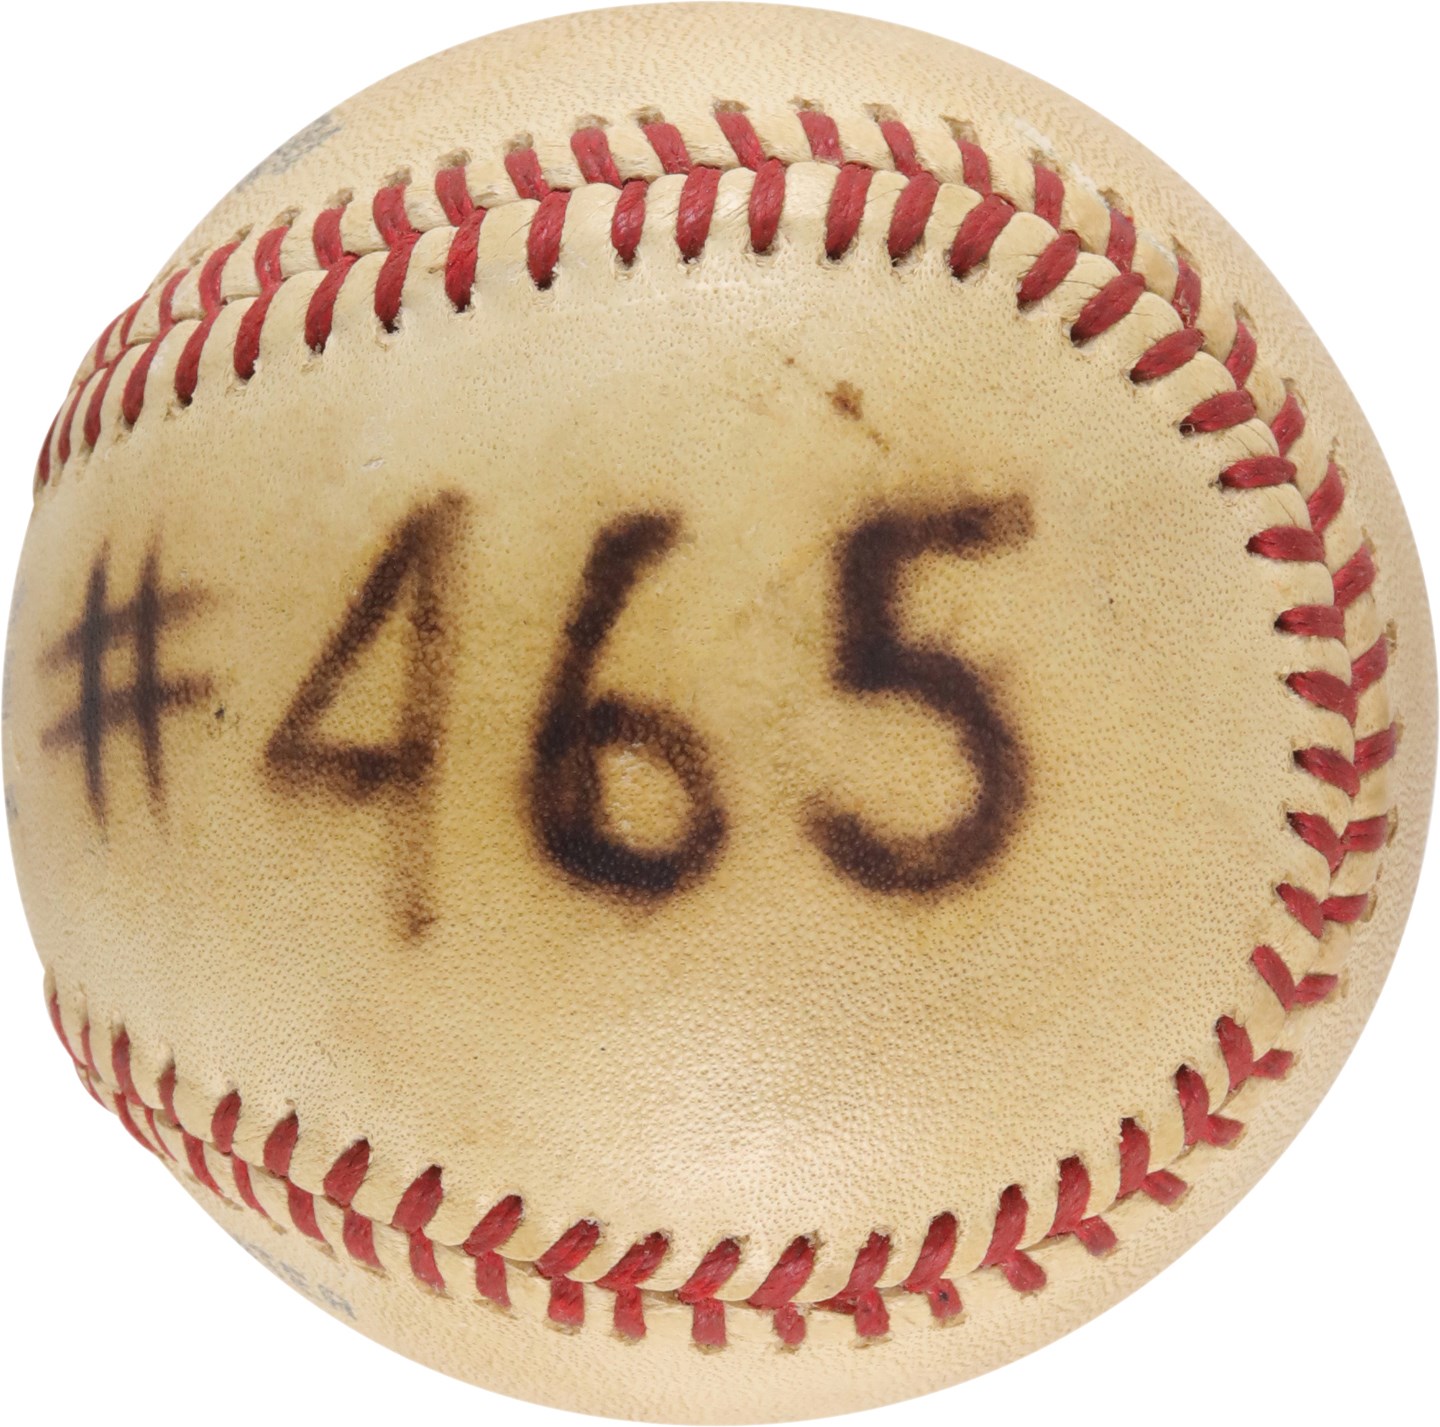 - 1980 Willie Stargell Career Home Run #465 Baseball (PSA)